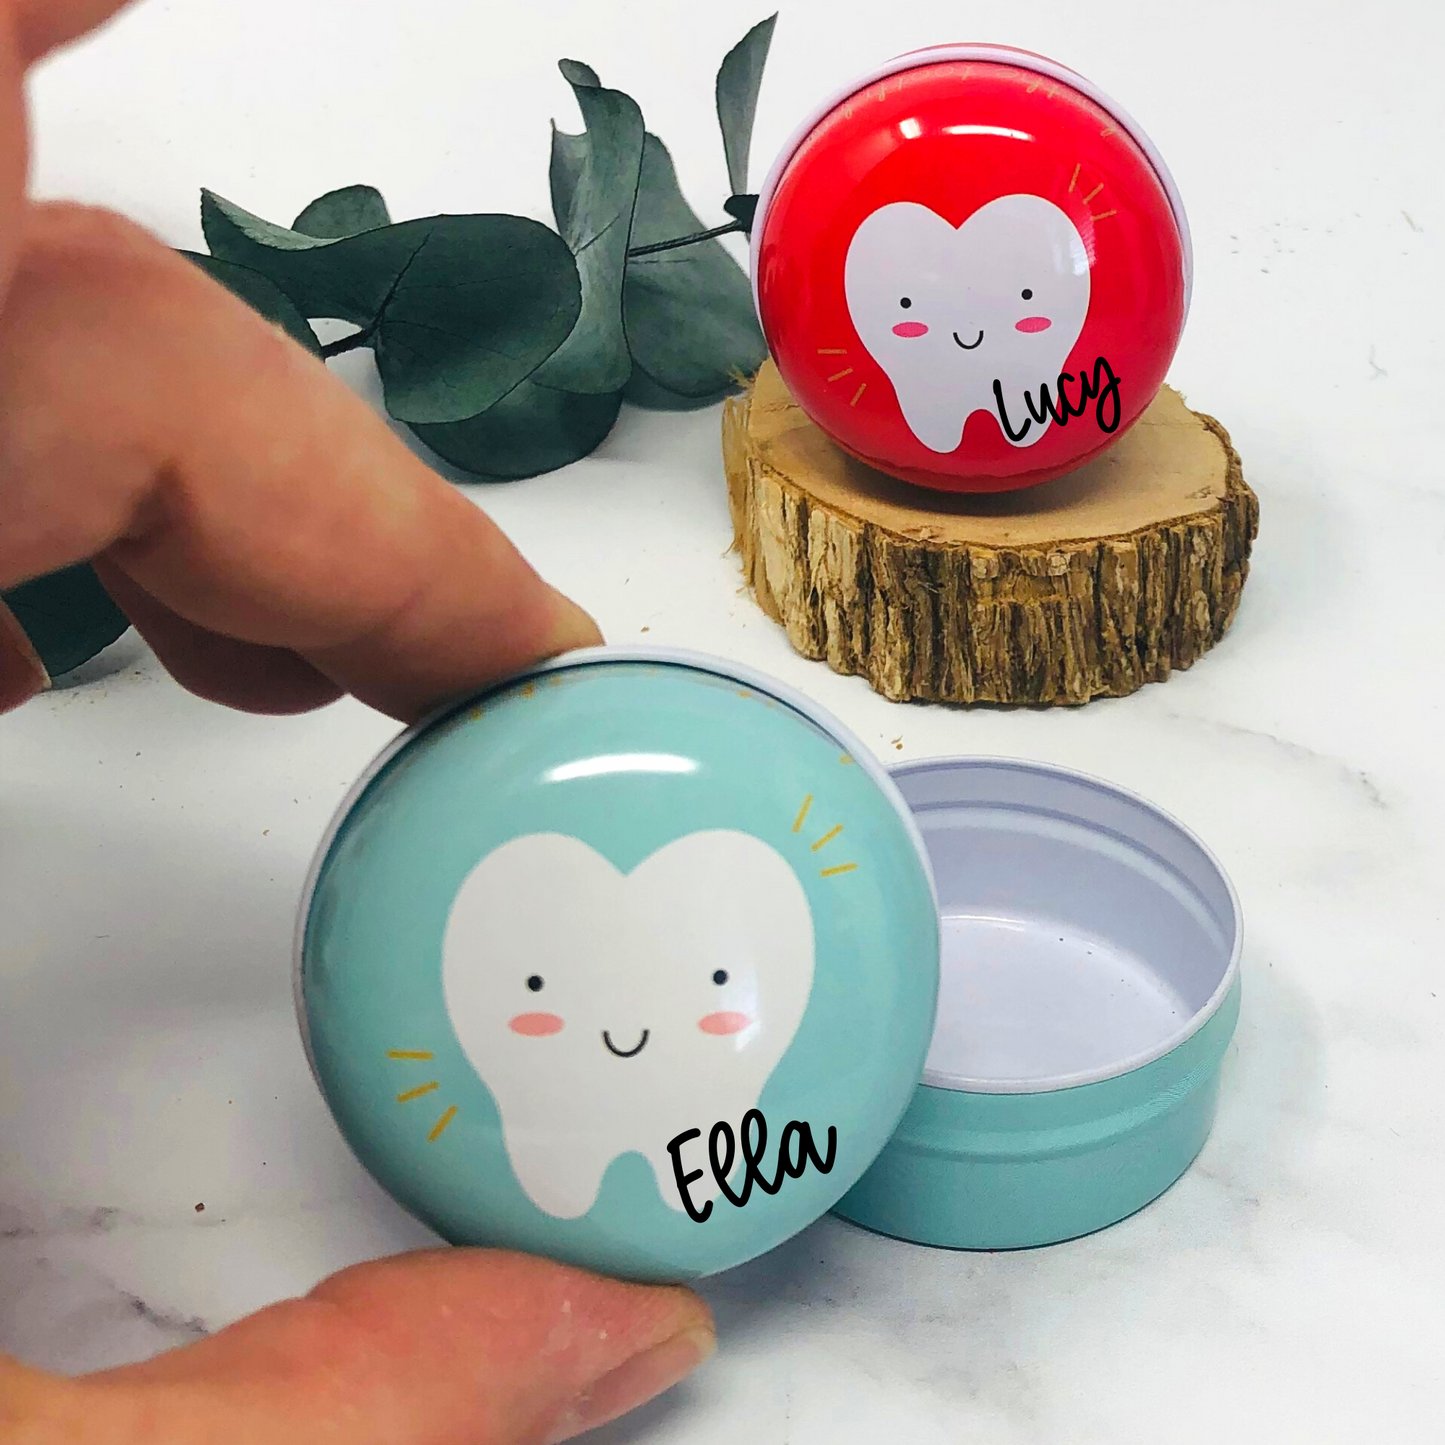 kleine Dose - Metall in mint - Aufbewahrung für Milchzähne - Zahnfee - personalisiert mit Namen - mint